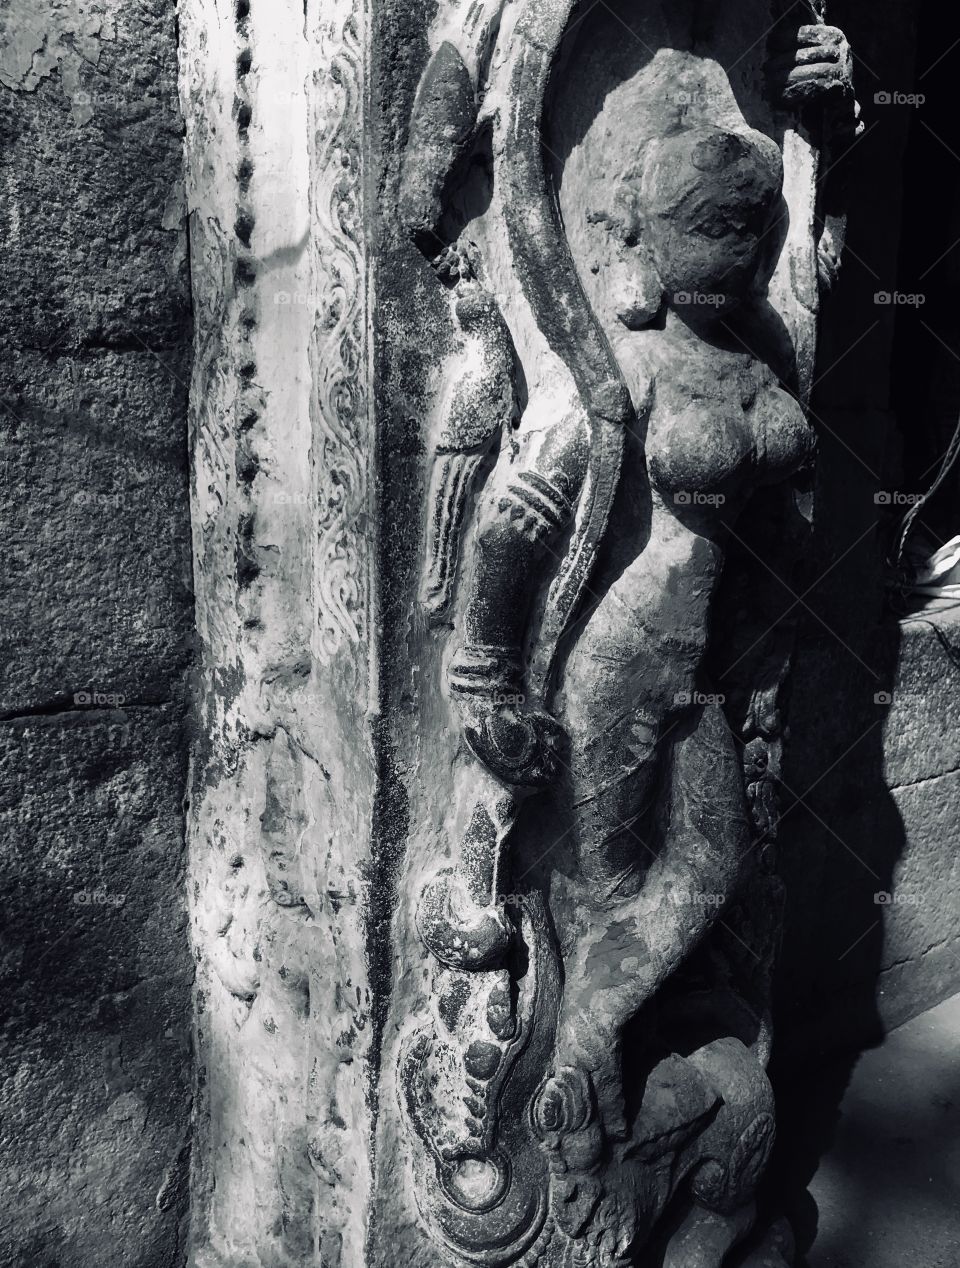 Sculptures in Hindu temple